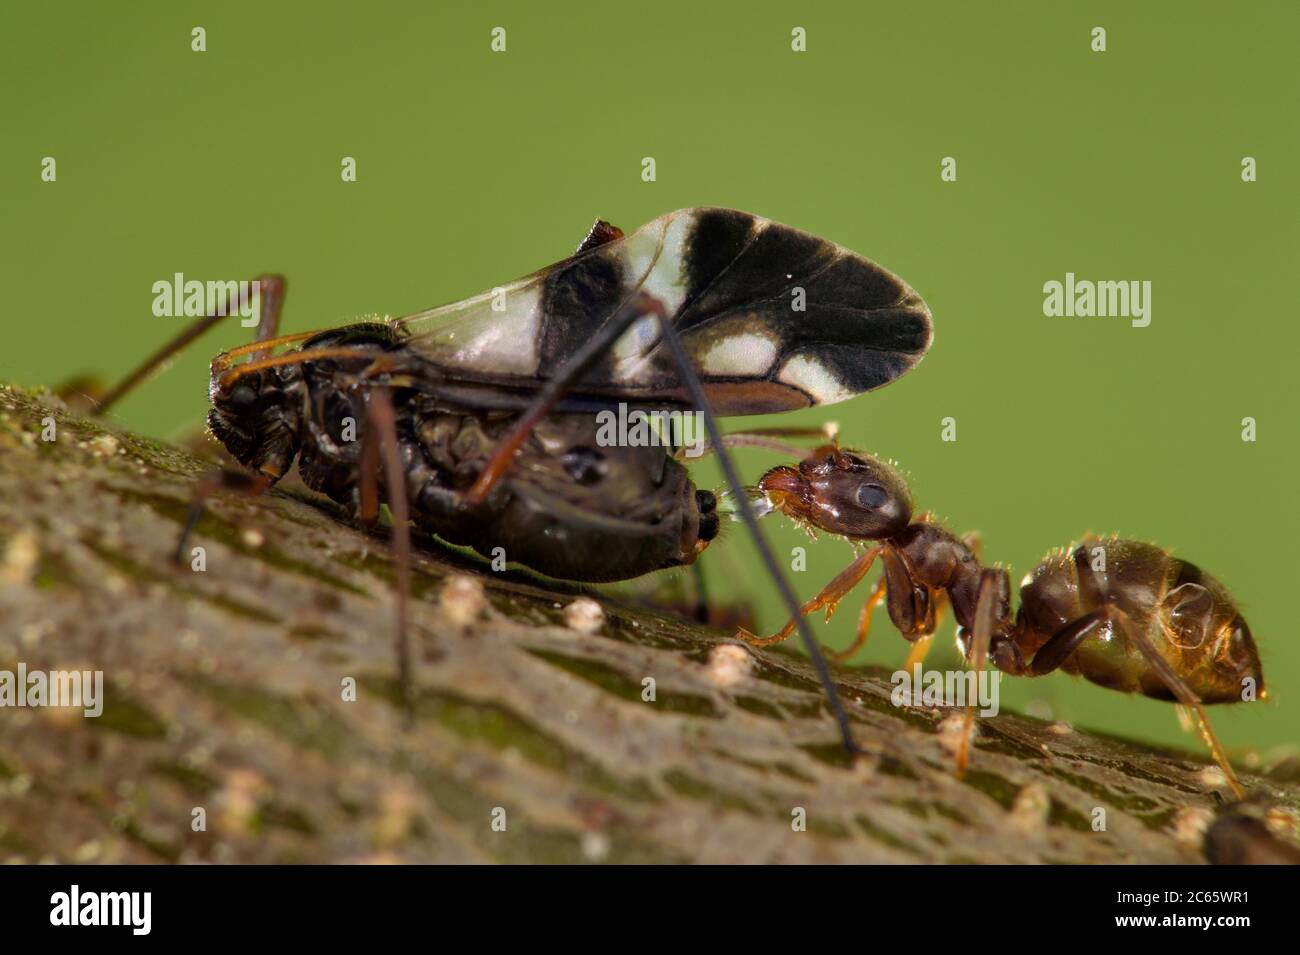 Formiche e afidi hanno un rapporto mutualistico. Le formiche si nutrono sulla rugiada escreta dagli afidi e, in cambio, proteggono gli afidi. Riserva naturale Altwarper dune interne, Meclemburgo-Vorpommern, Germania Foto Stock